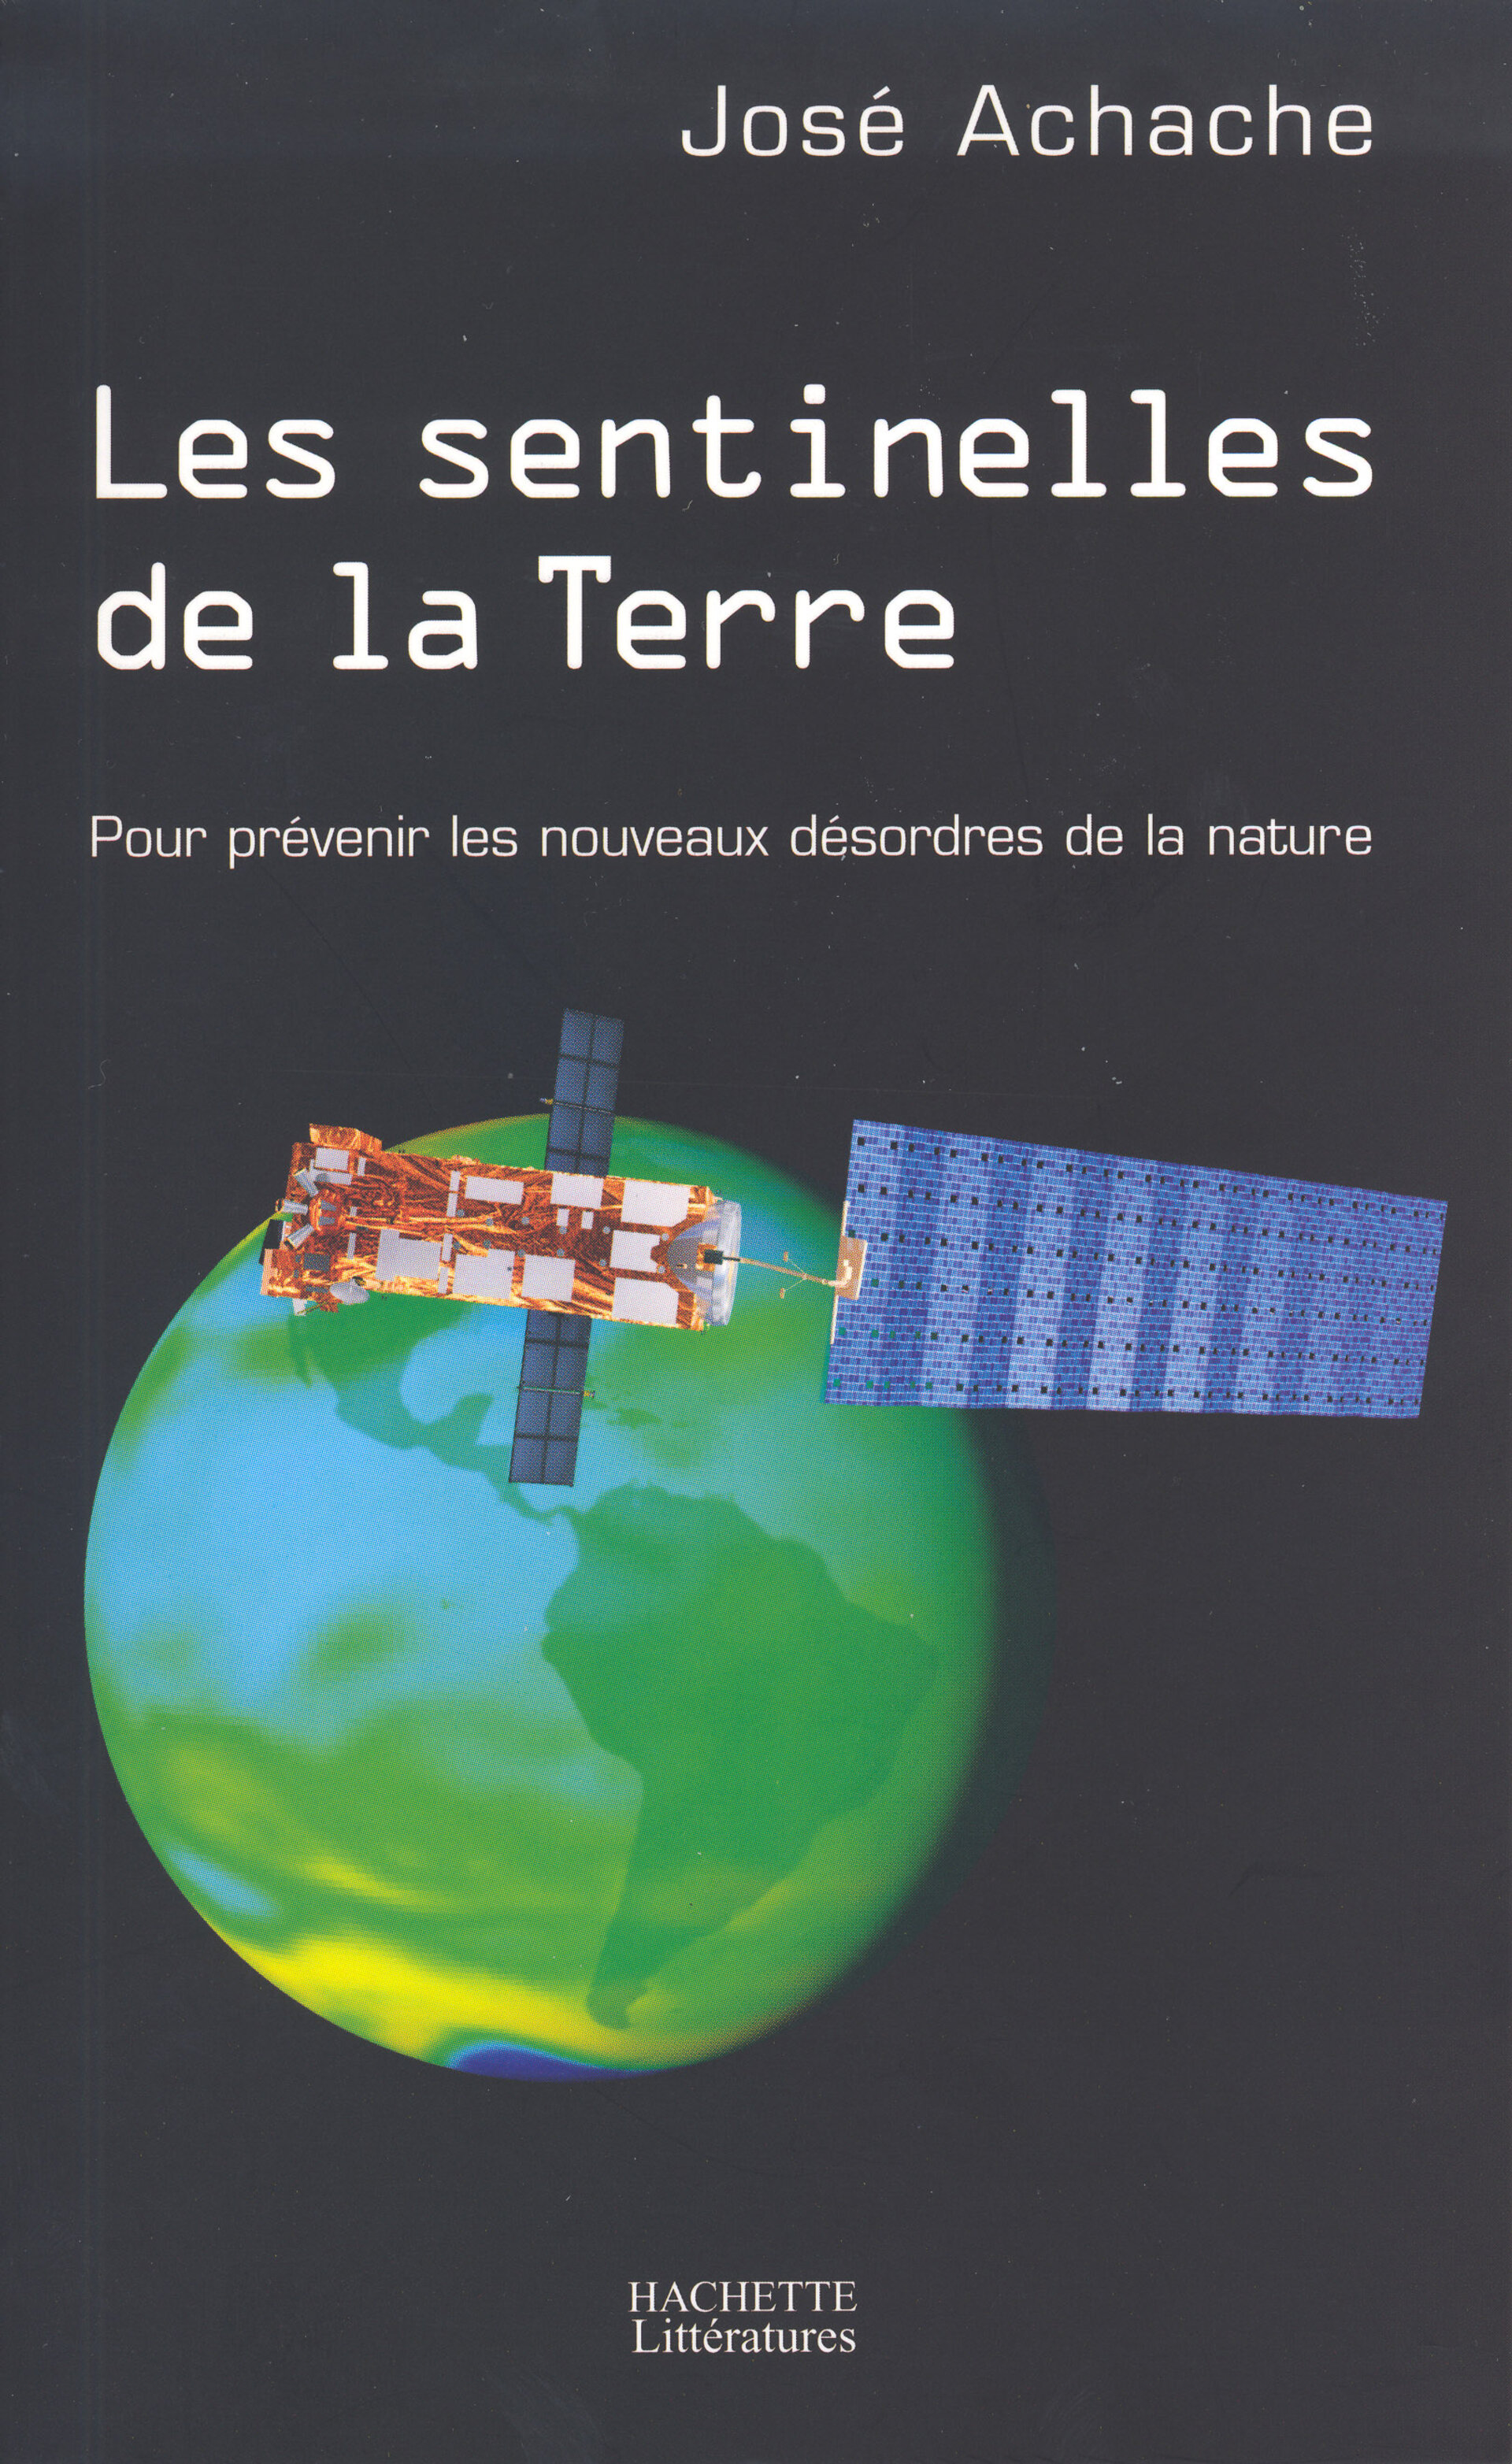 "Les sentinelles de la Terre", nouveau livre de José Achache.